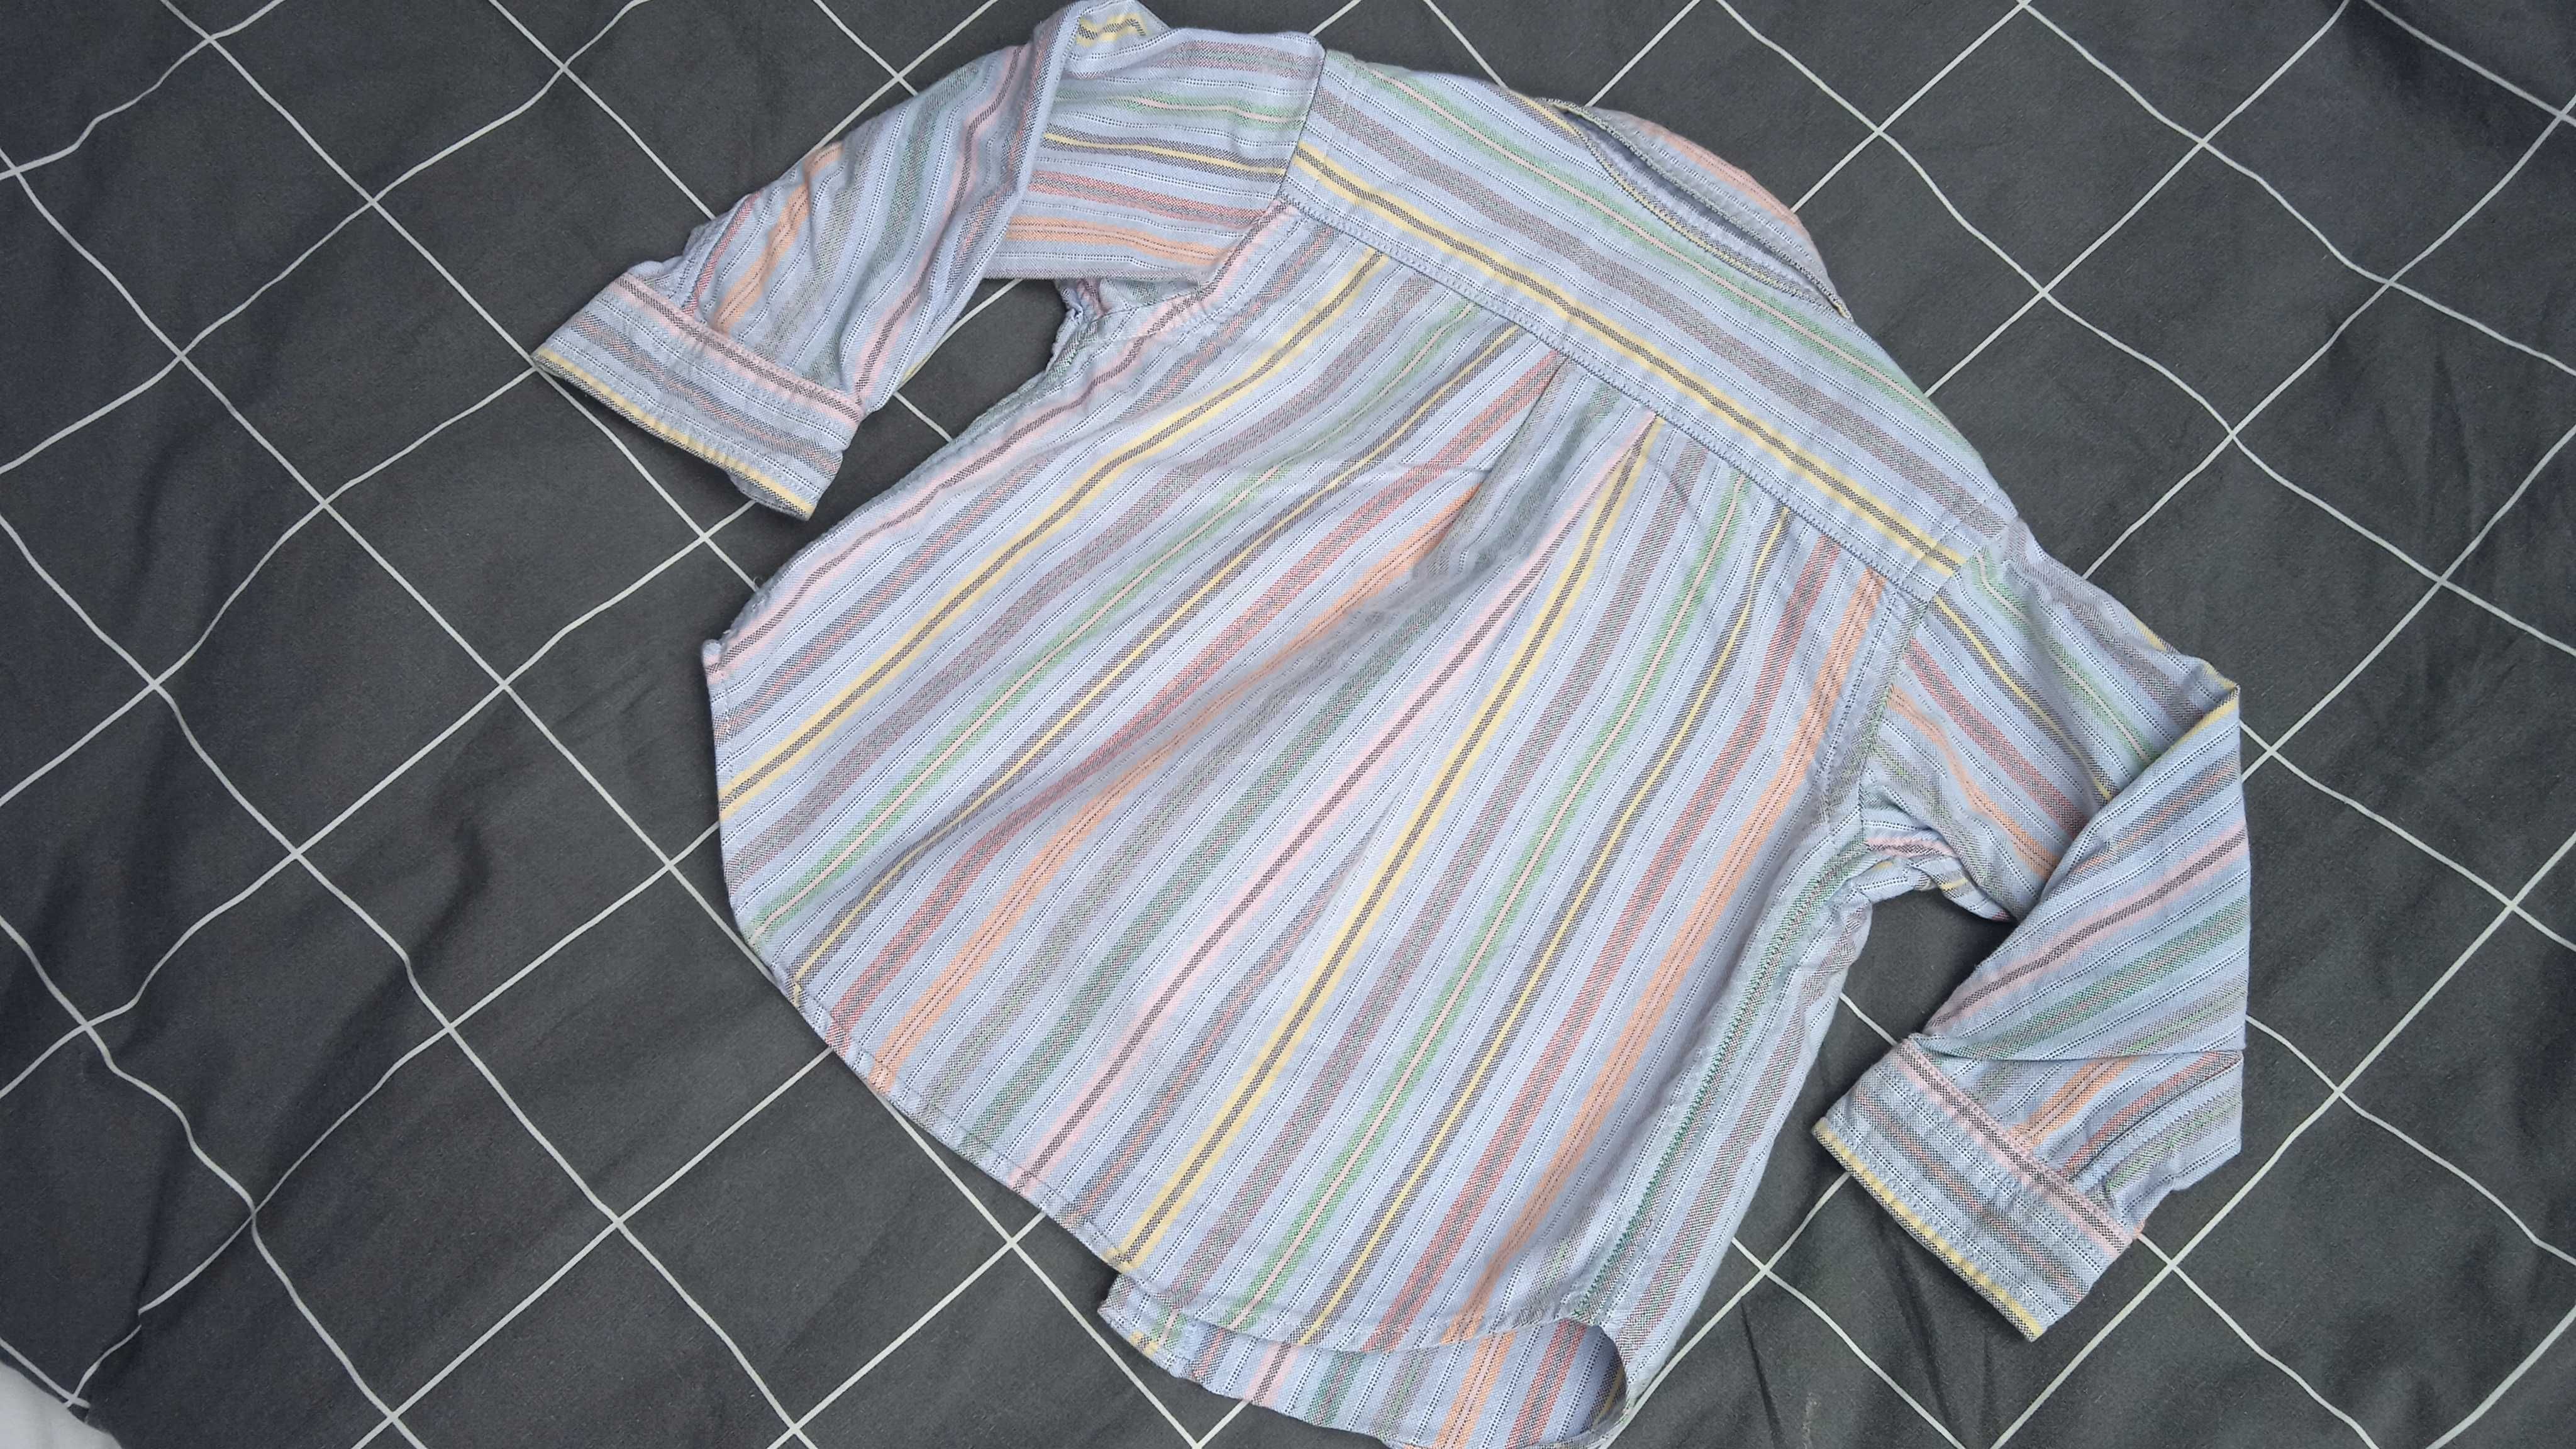 Koszula w paski, niemowlęca Ralph Lauren roz 18 miesięcy